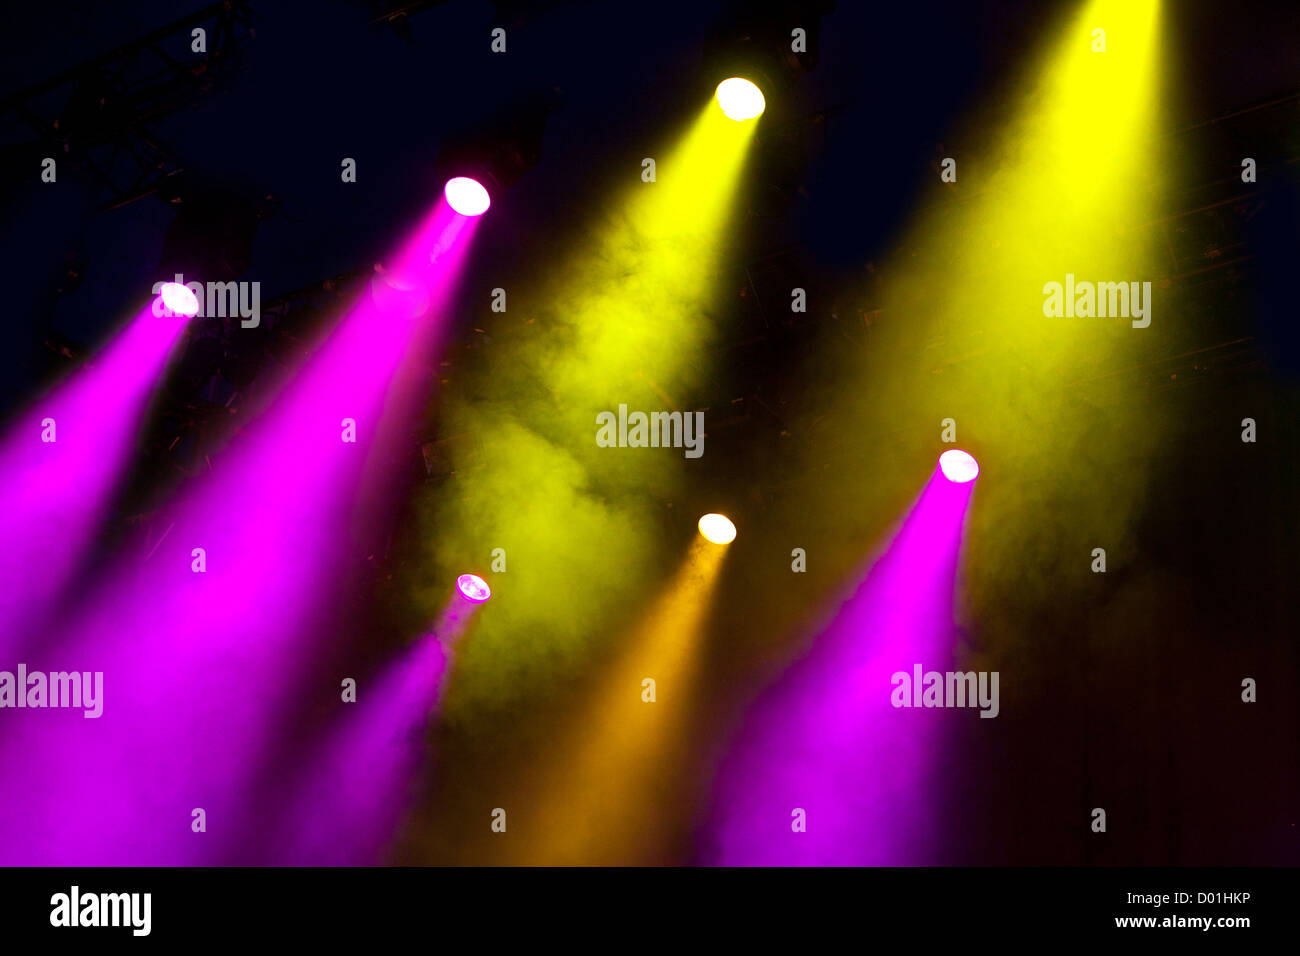 Wellen von farbigen Farblicht glänzen durch atmosphärische Rauch auf dramatische Weise auf eine leere Bühne Licht Stockfoto